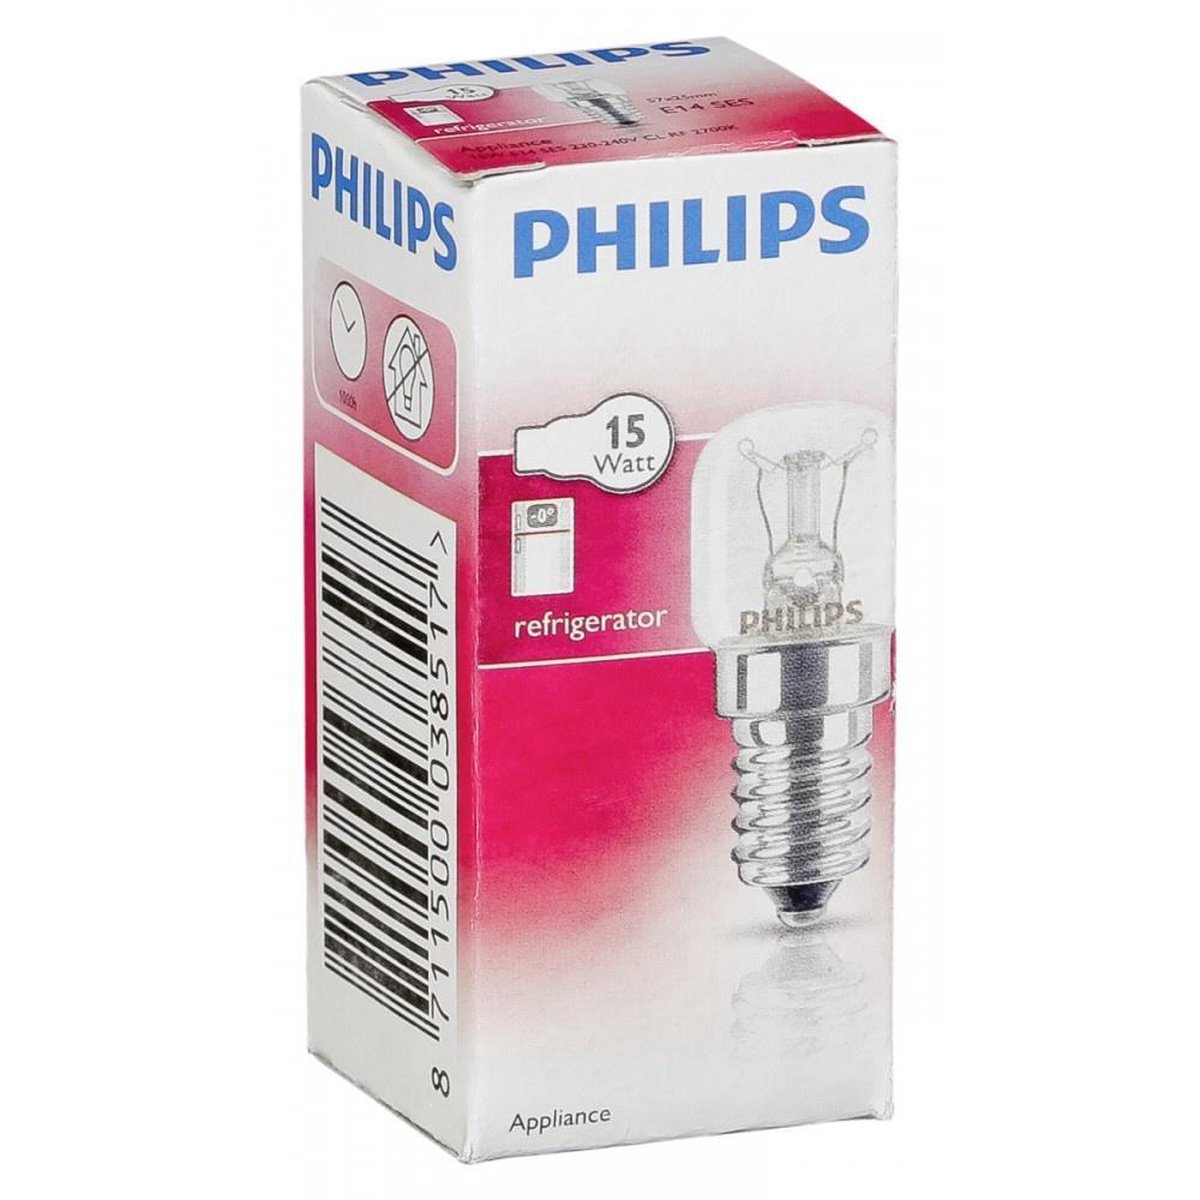 Филипс т. Лампа Philips 15w Heavy. T25 лампа Philips. Philips Appl 15w e14 230-240v t25.... Philips 15 w.